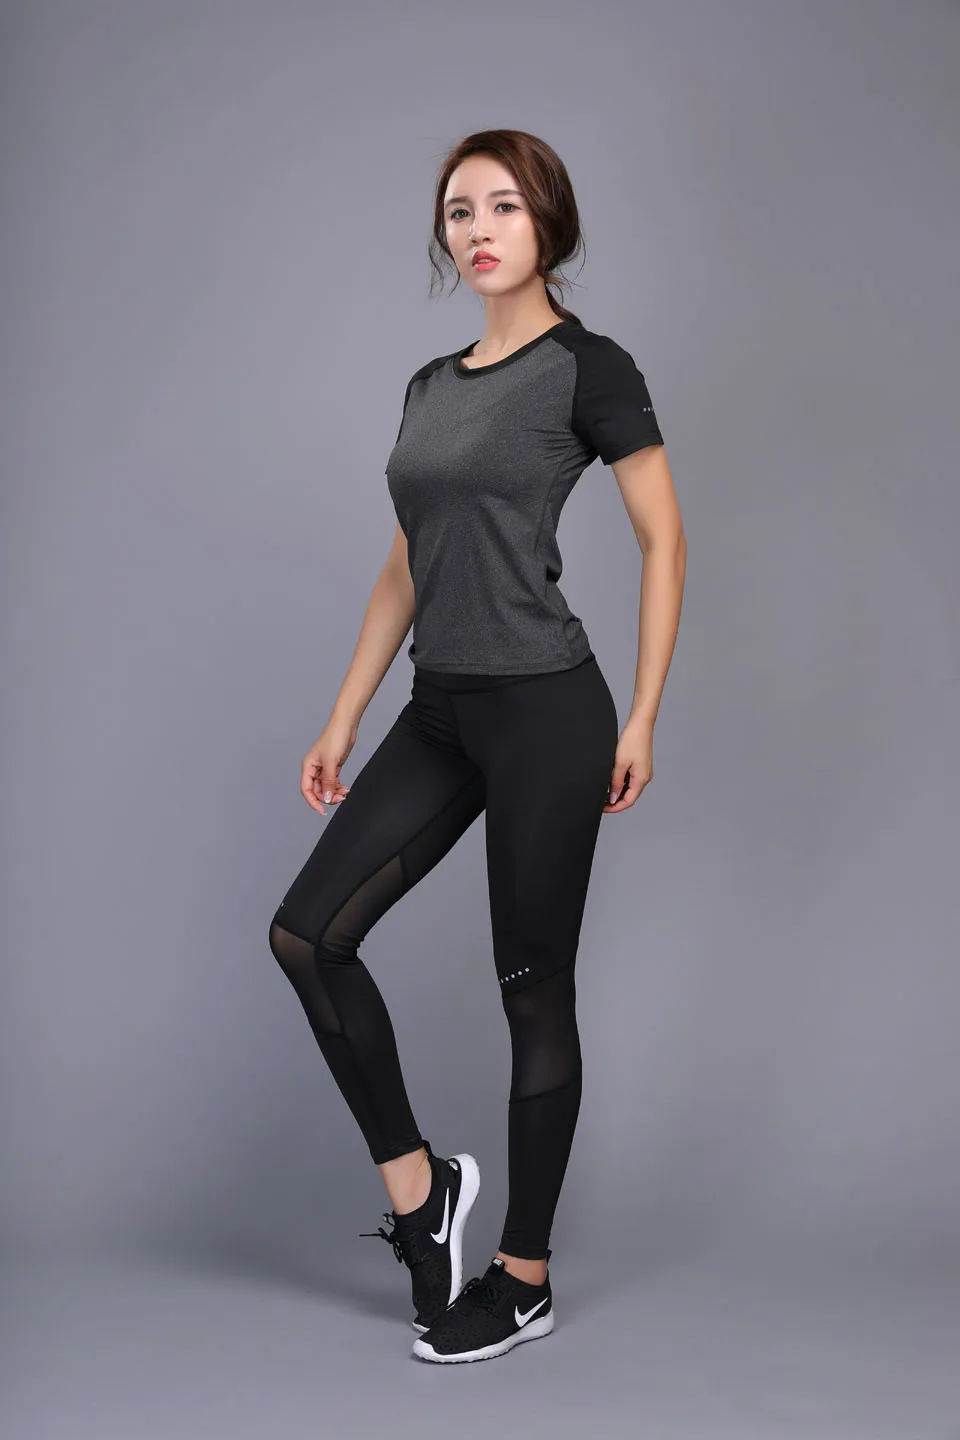 Женский комплект для йоги, облегающий комплект для бега, для бега, спортзала, тренировки, бодибилдинга, фитнеса, тренировок, Спортивная футболка и штаны, костюм для бега